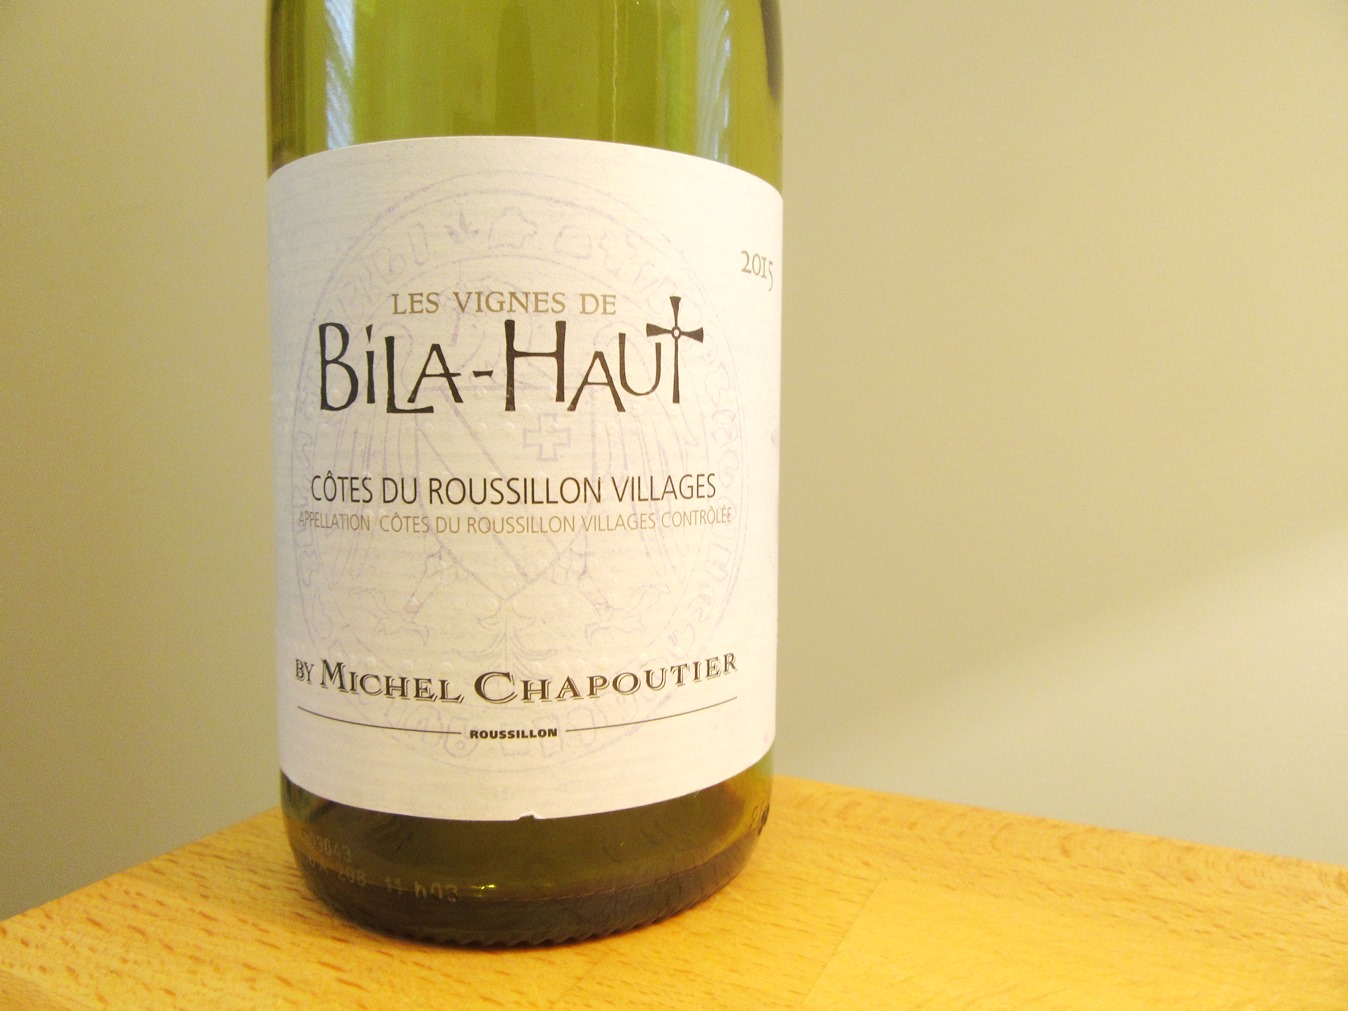 Michel Chapoutier, Les Vignes de Bila-Haut Blanc 2015, Côtes du Roussillon Villages, France